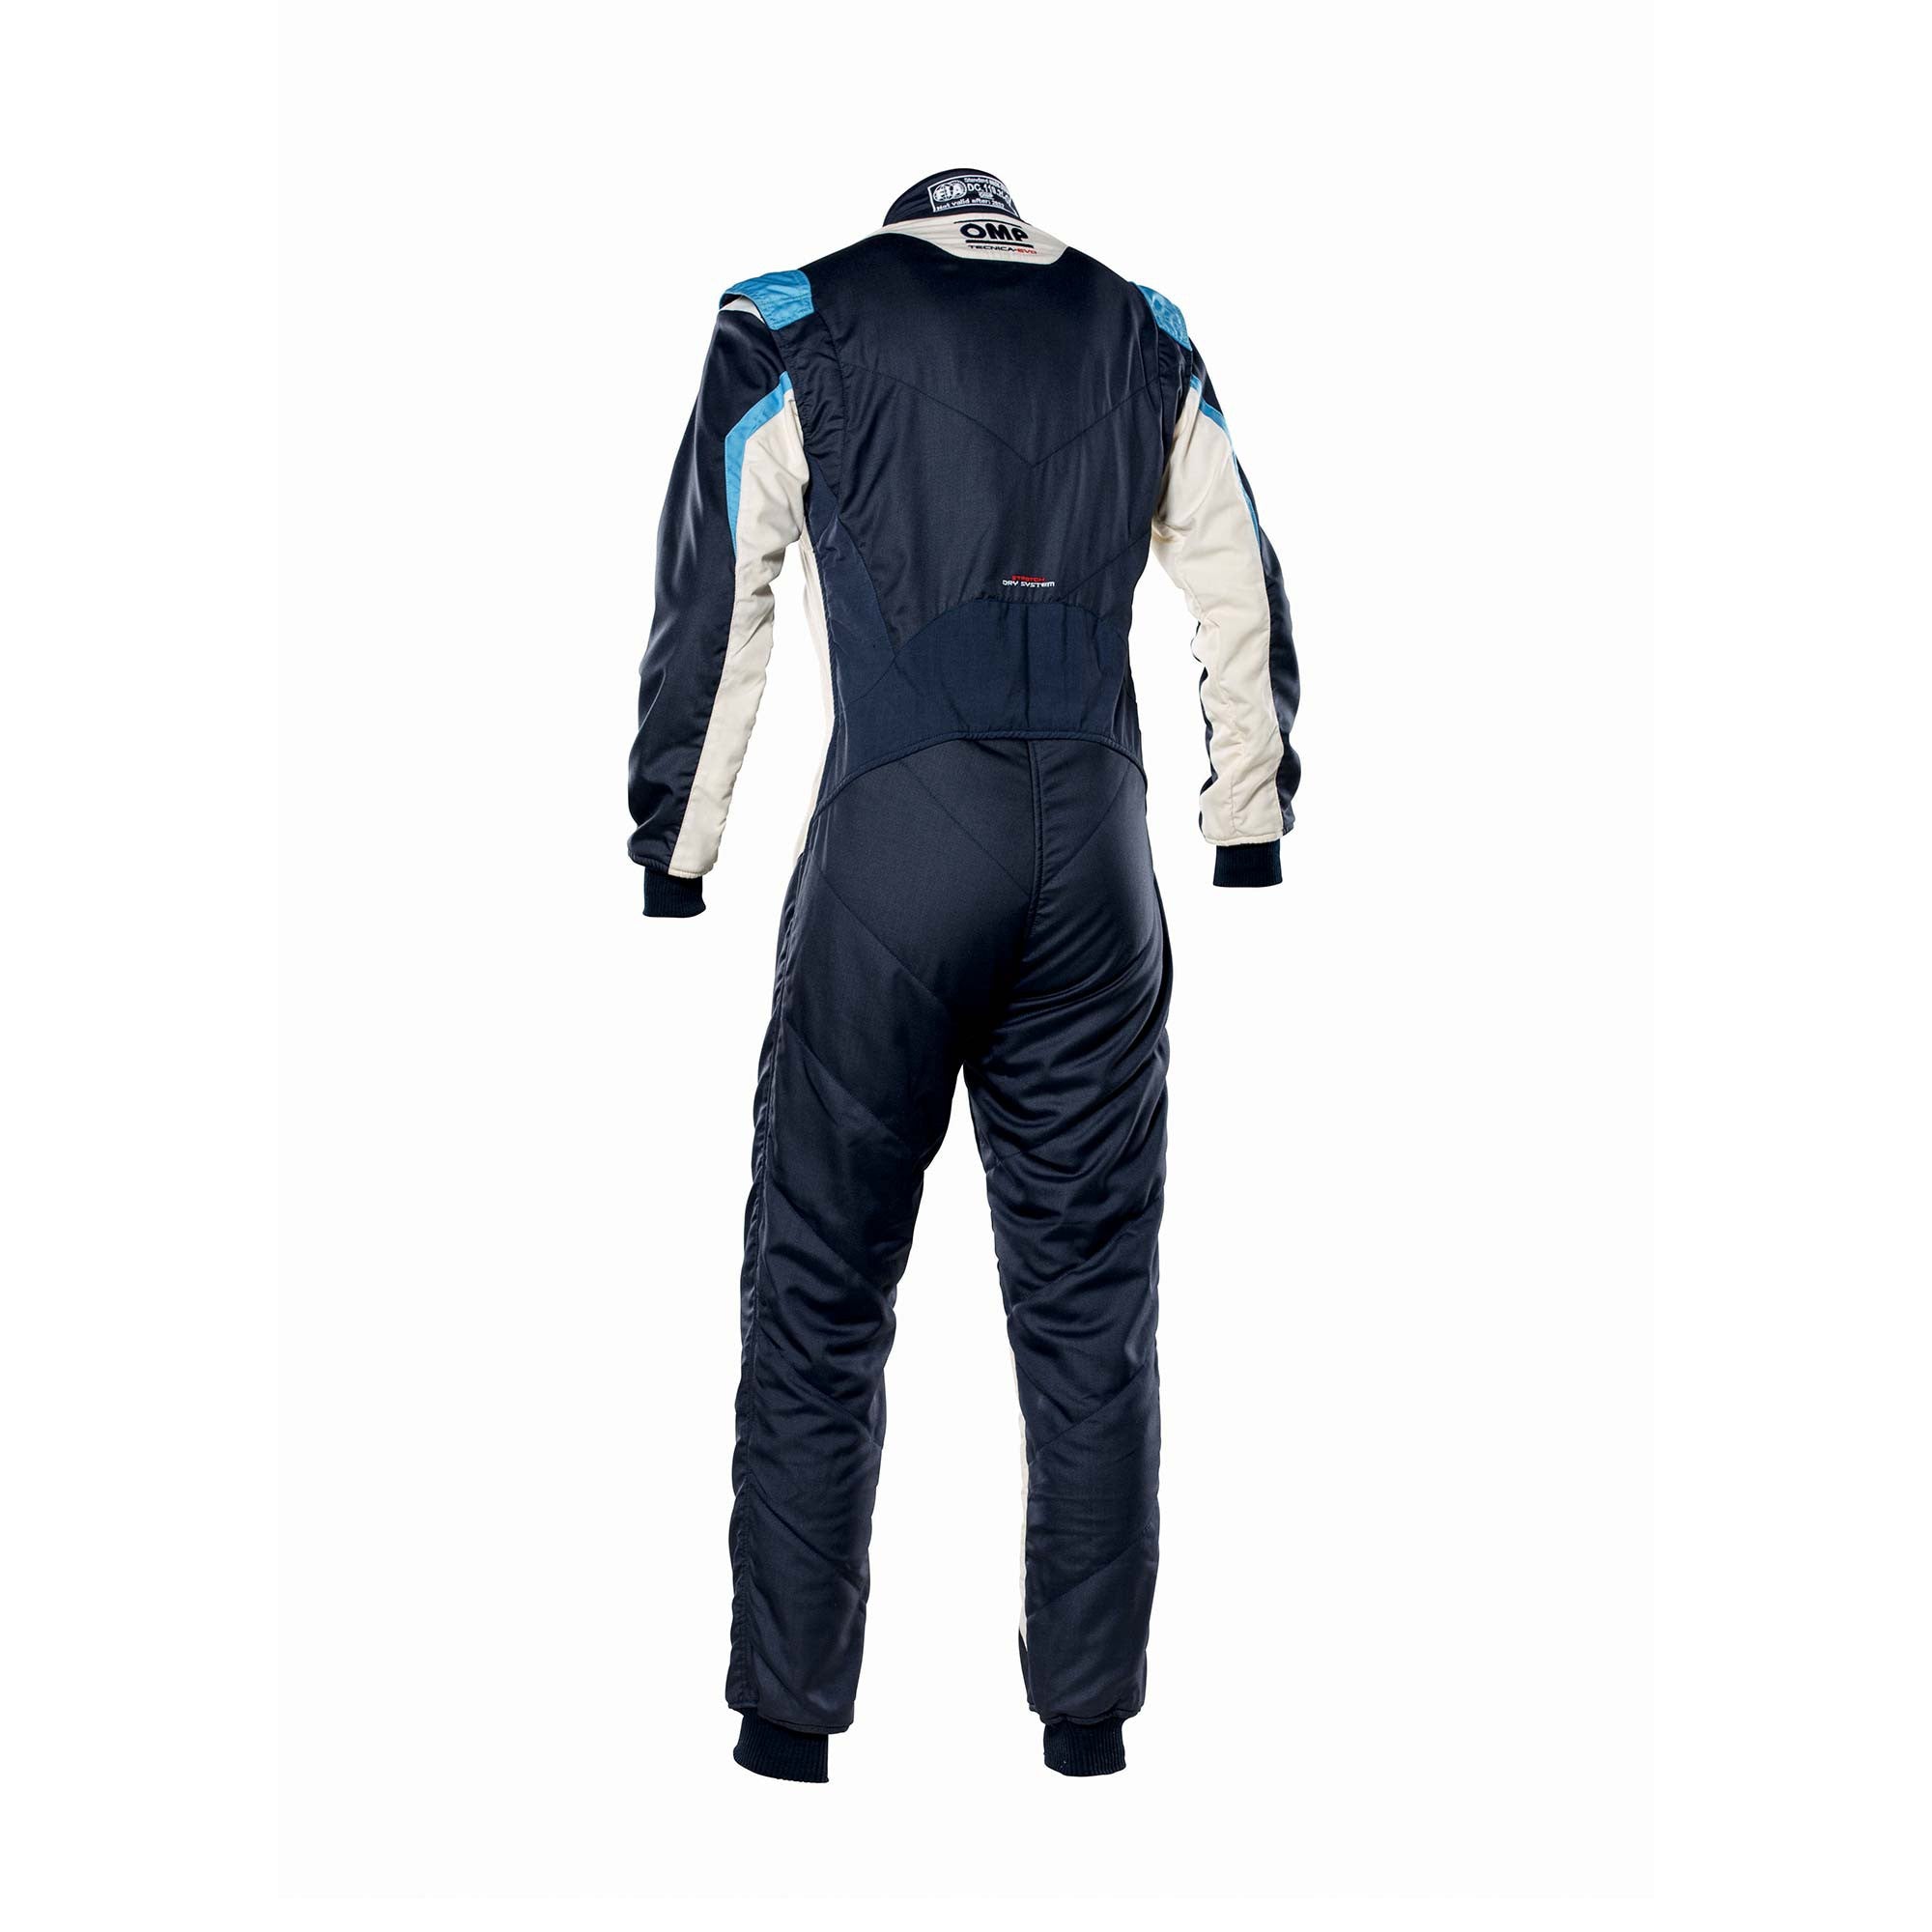 OMP IA0-1859-B01-246-54 Racing suit TECNICA EVO MY2021, FIA 8856-2018, navy blue/white/grey/cyan, size 54 Photo-1 